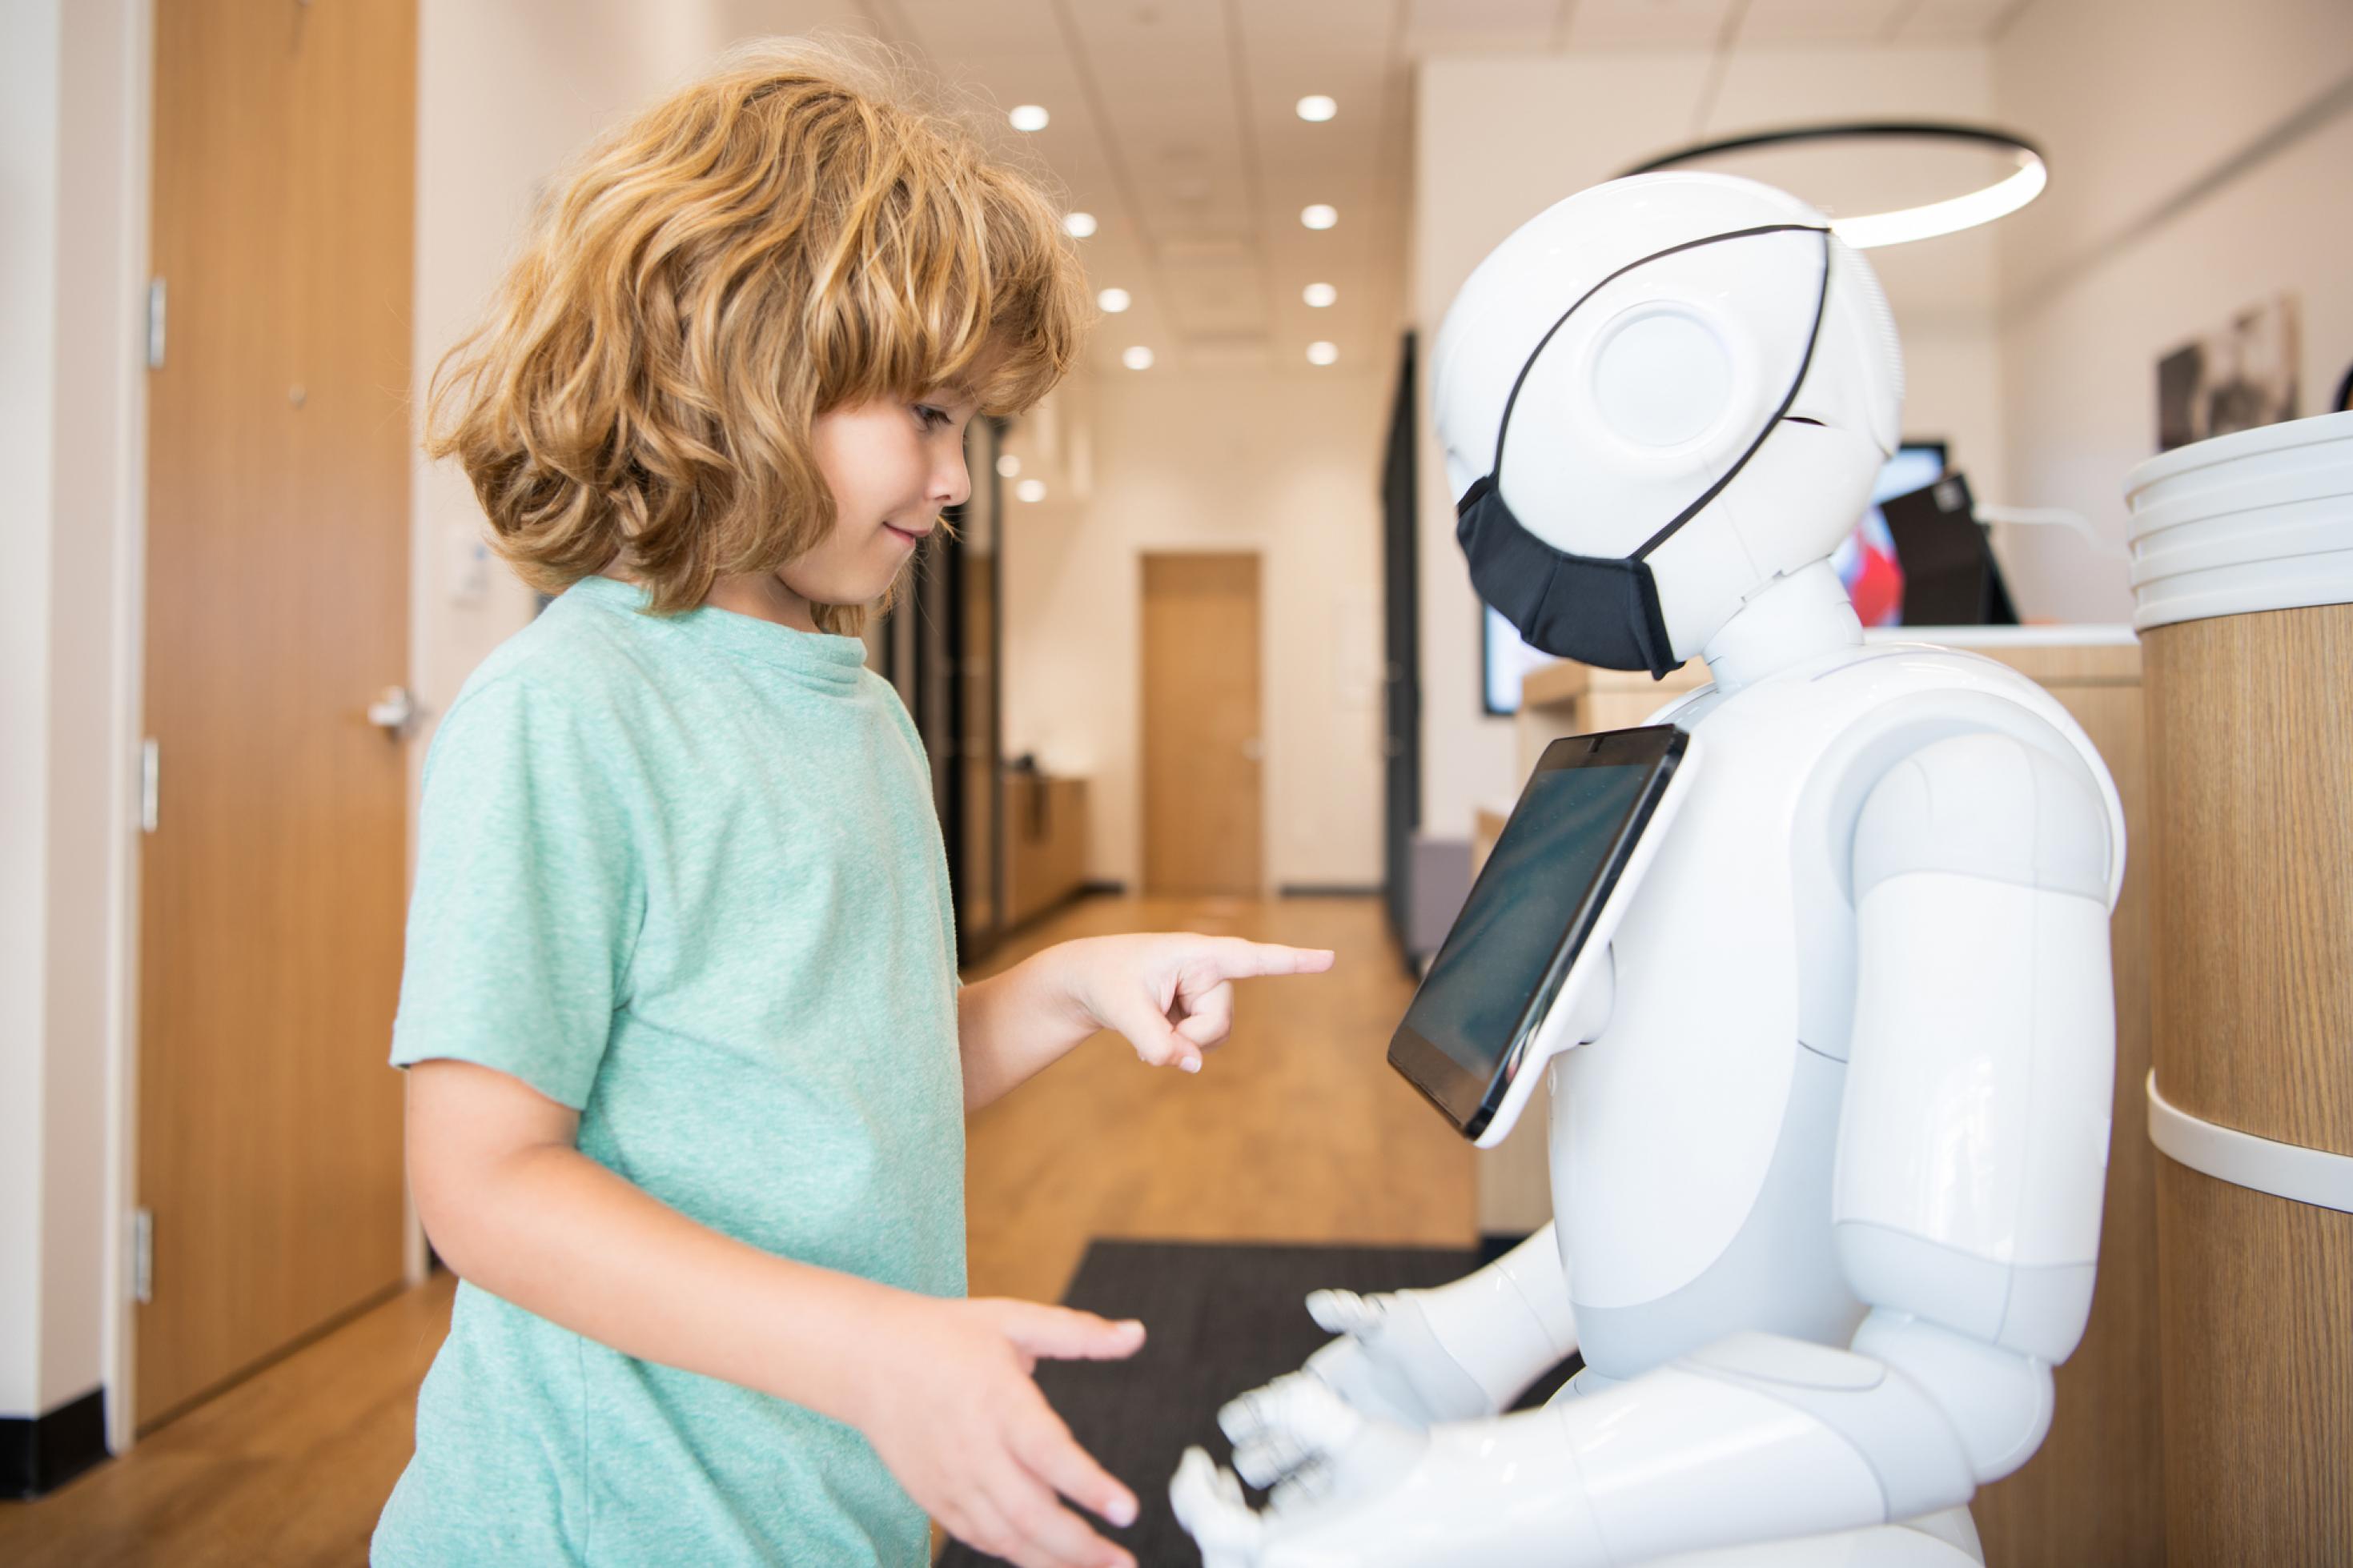 Junge bedient mit Roboter, der mit künstlicher Intelligenz kommuniziert